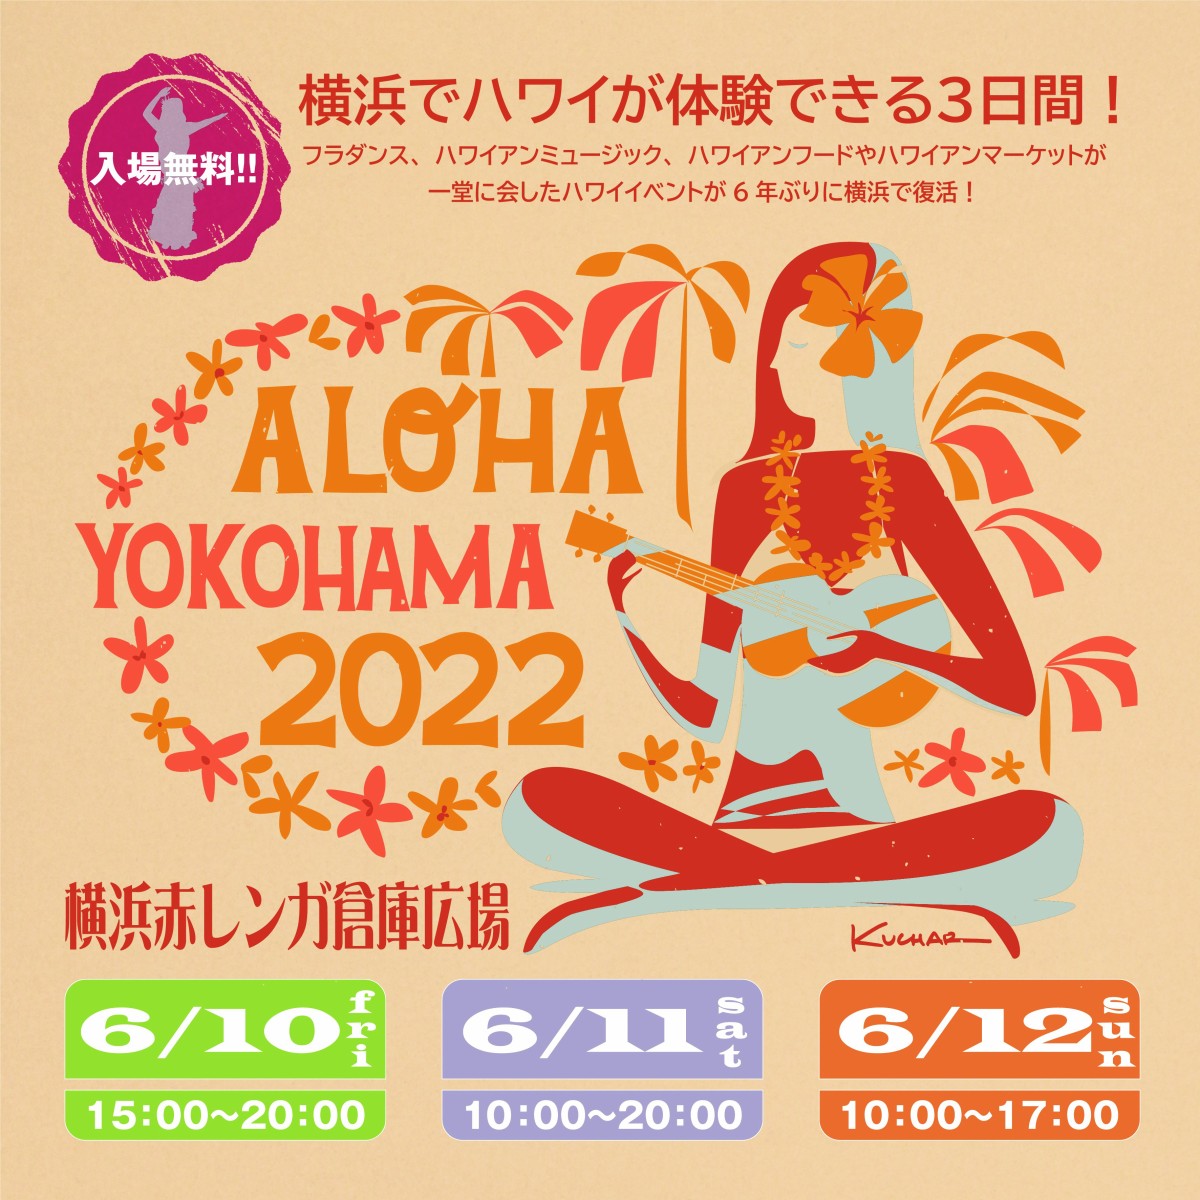 ALOHA YOKOHAMA 2022